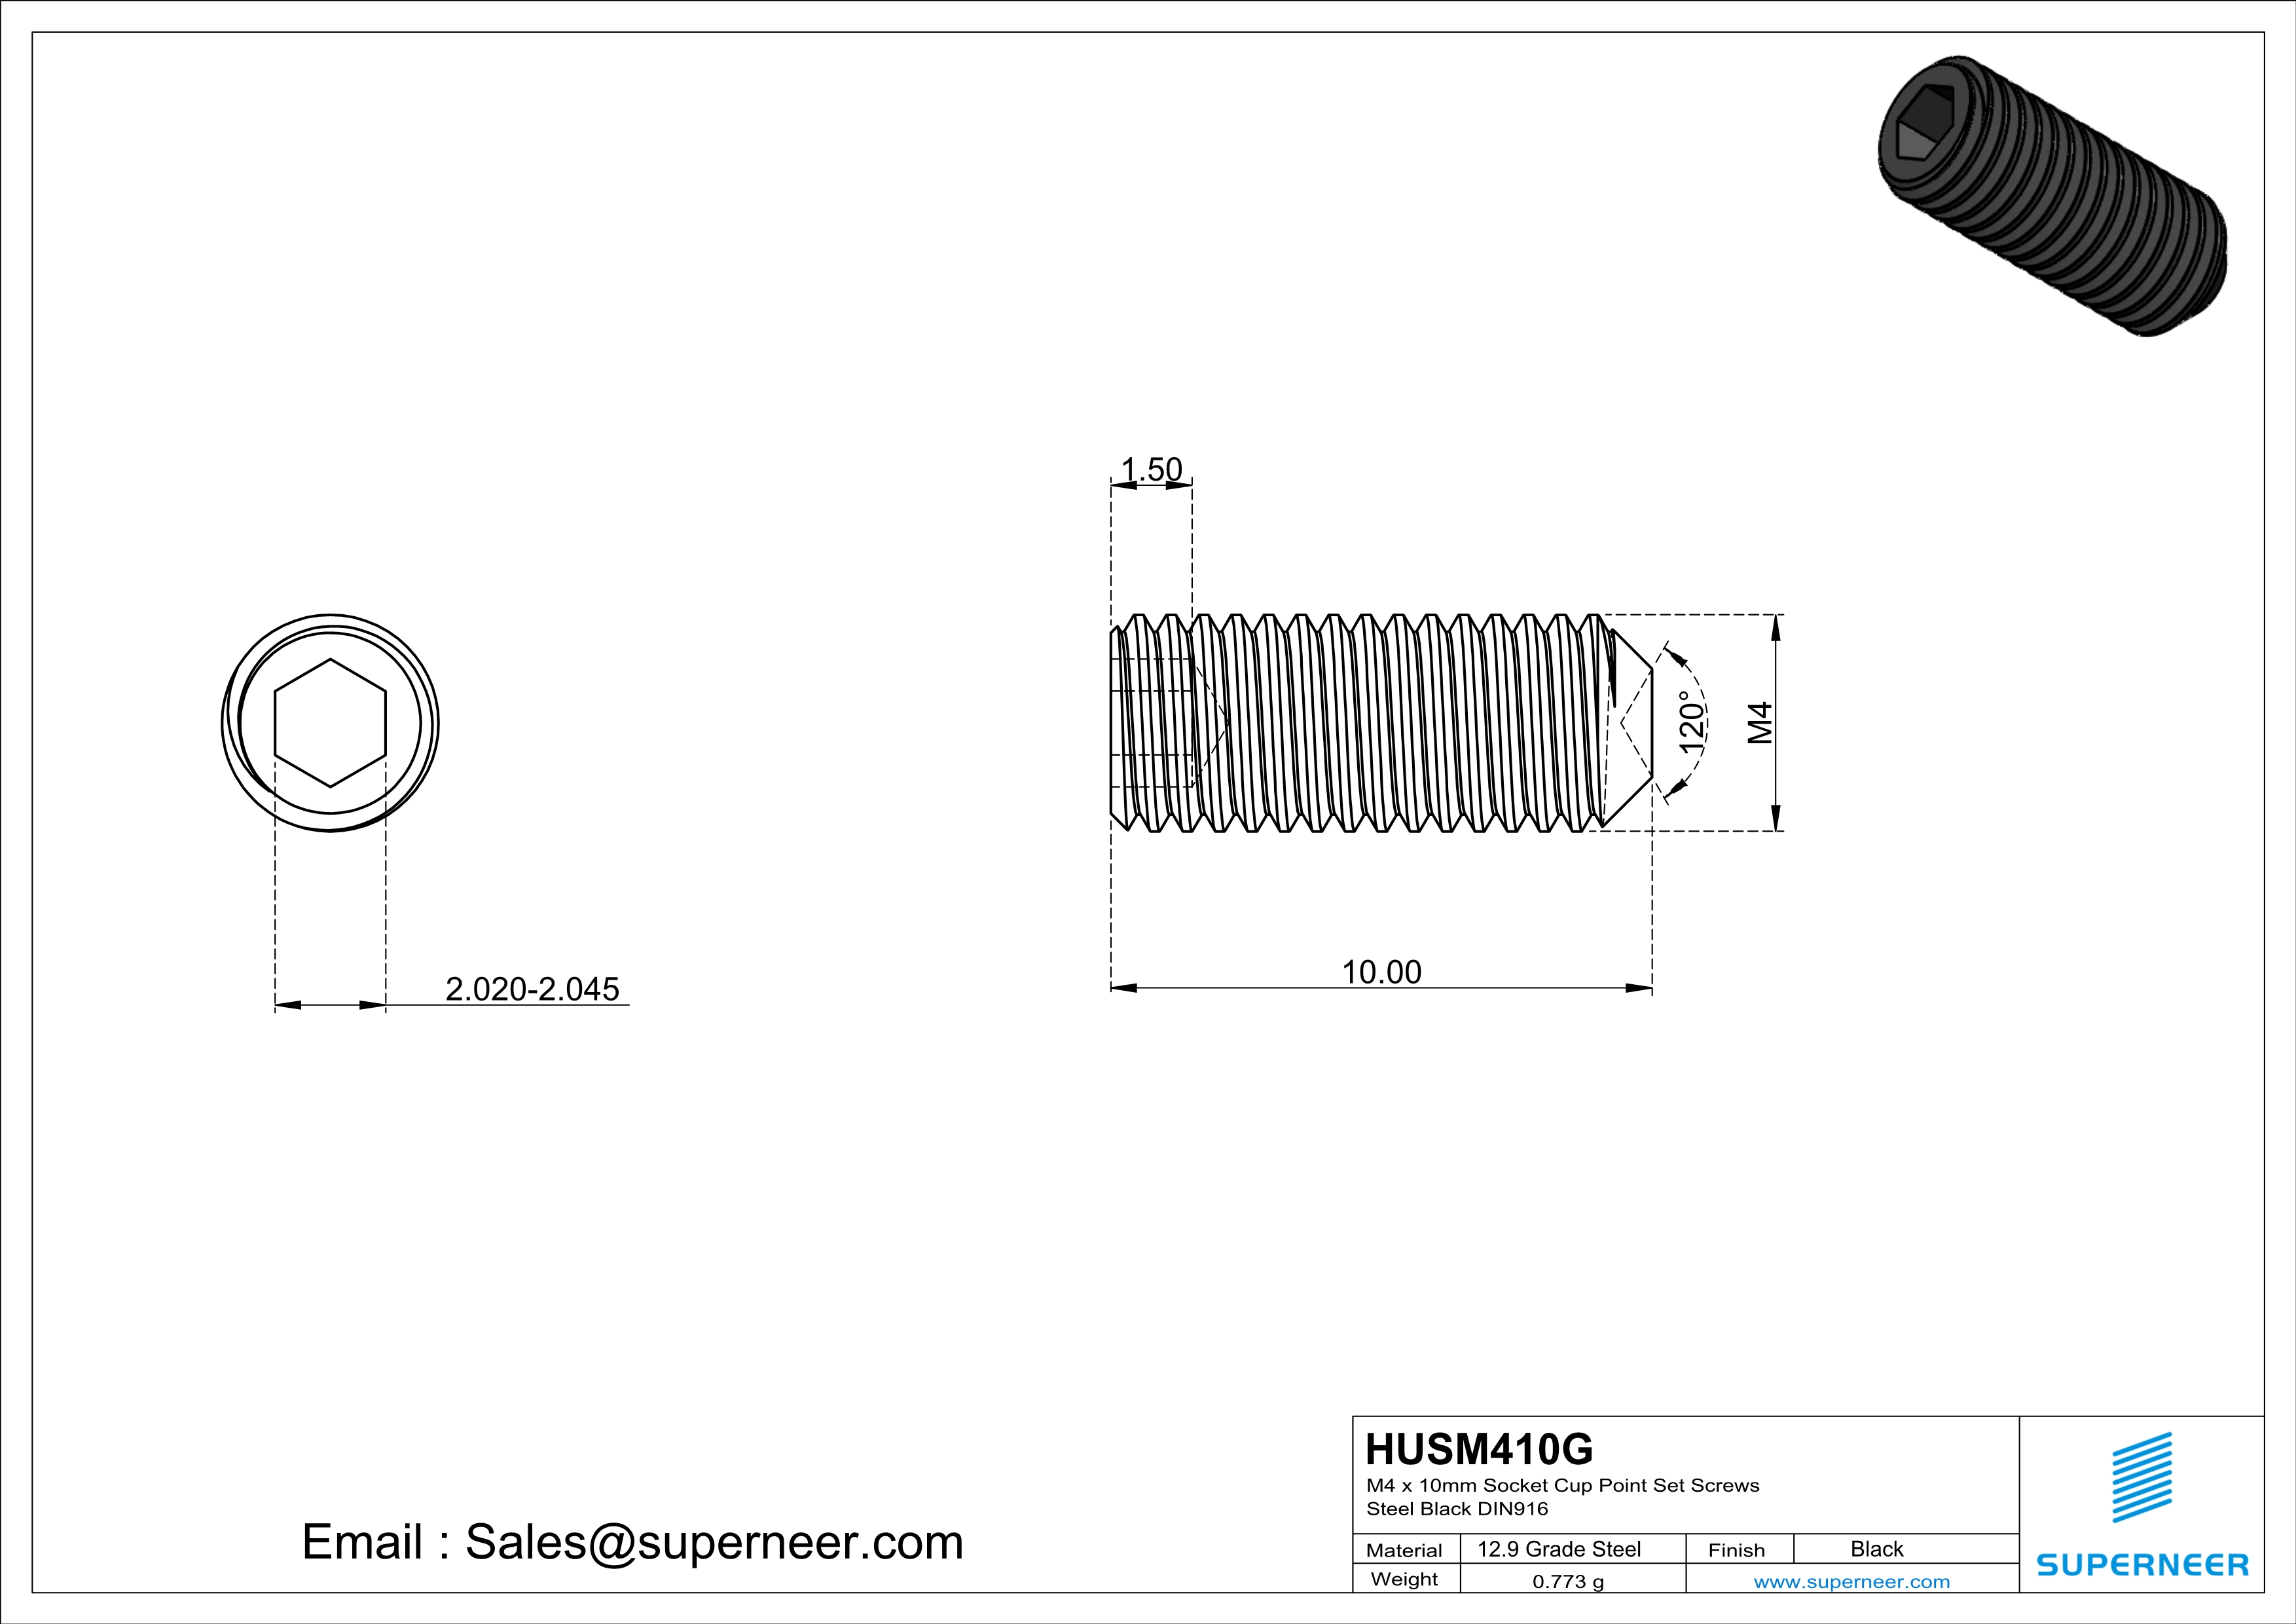 M4 x 10mm Socket Cup Point Set Screws 12.9 Carbon Steel Black DIN916